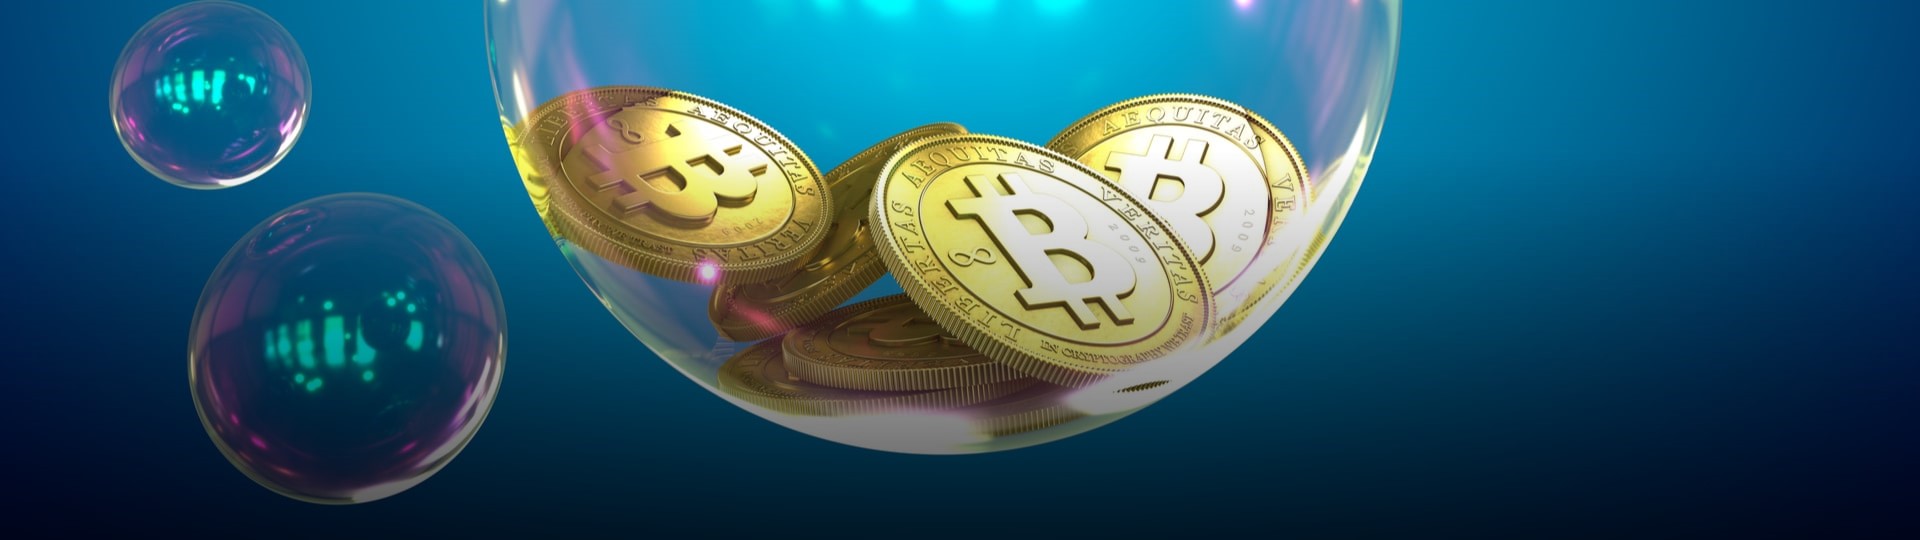 Průzkum: Největšími bublinami jsou bitcoin a technologické akcie